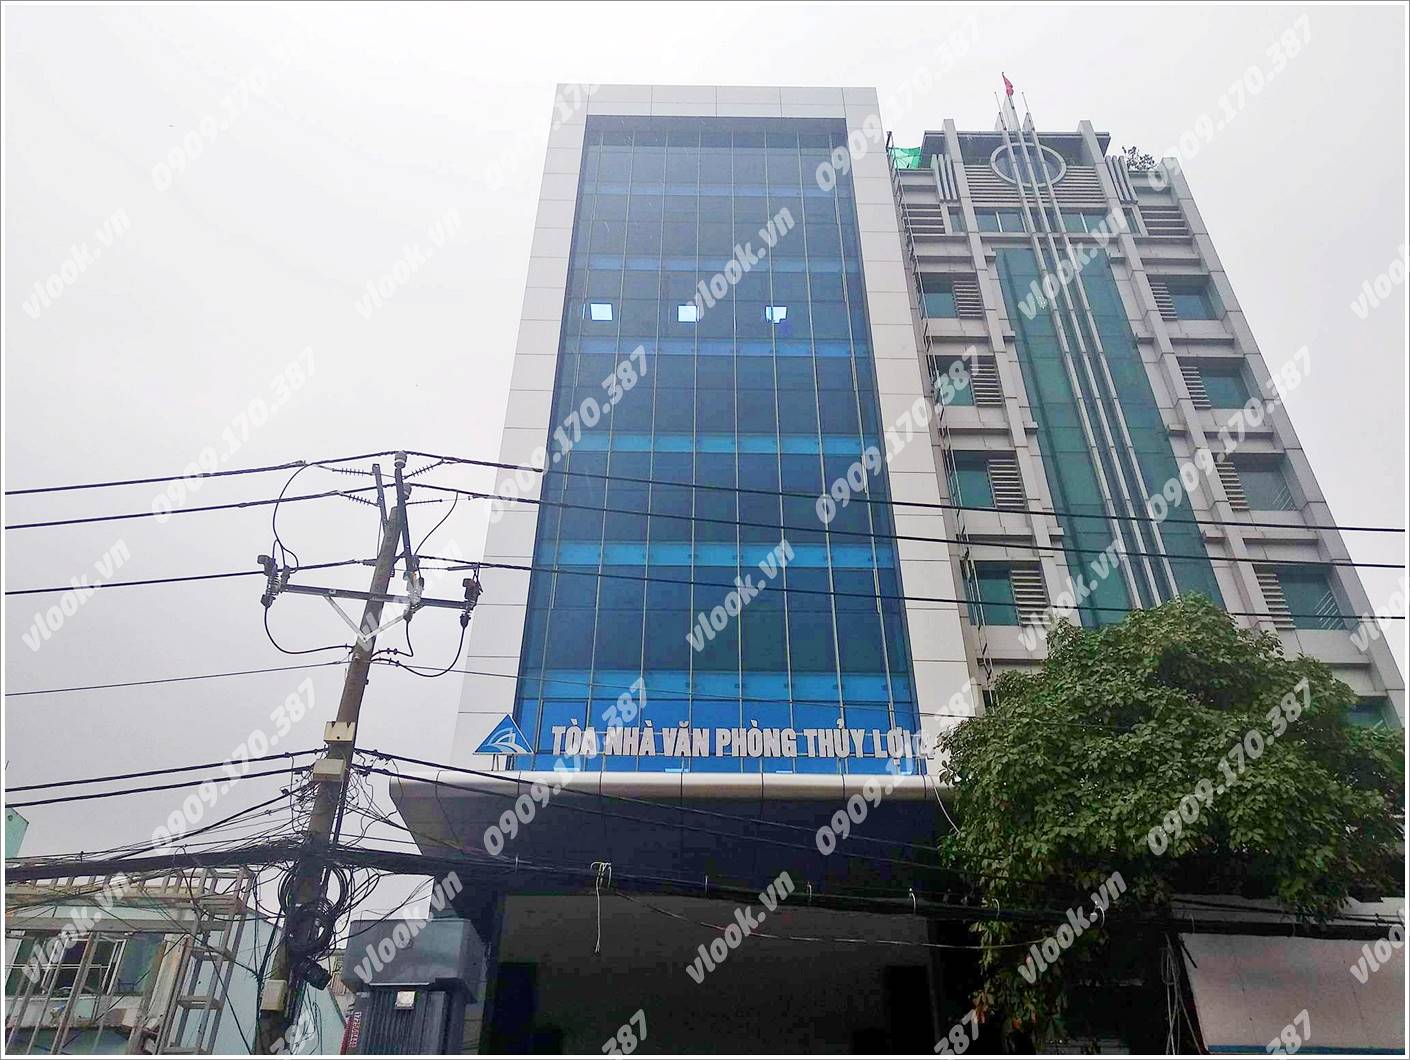 Cao ốc cho thuê văn phòng Thủy Lợi 4 Building, Nguyễn Xí, Quận Bình Thạnh, TPHCM - vlook.vn